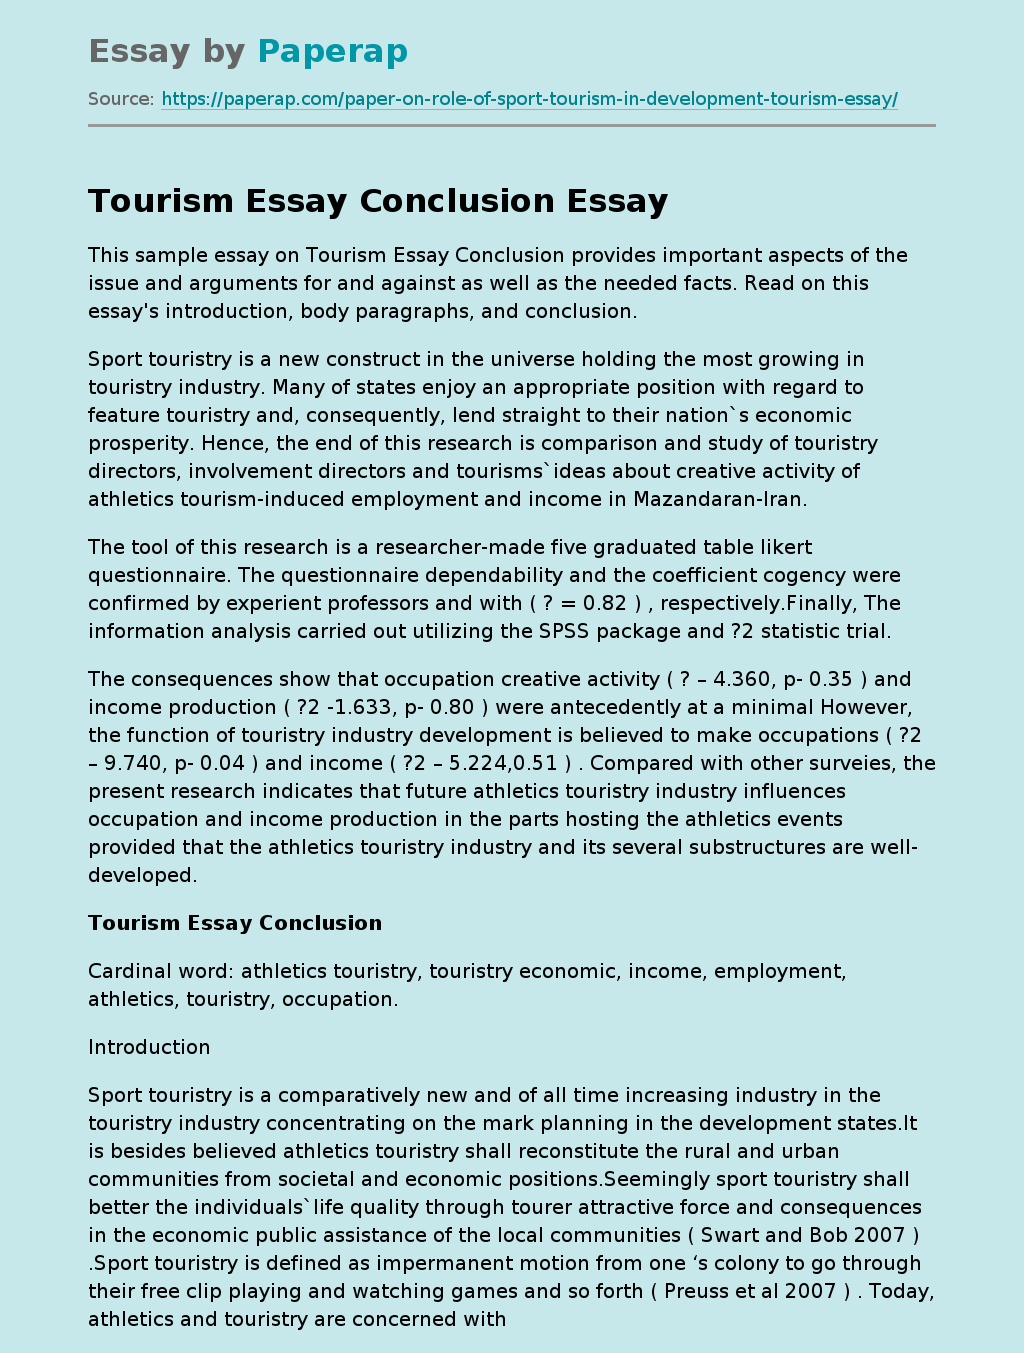 Tourism Essay Conclusion